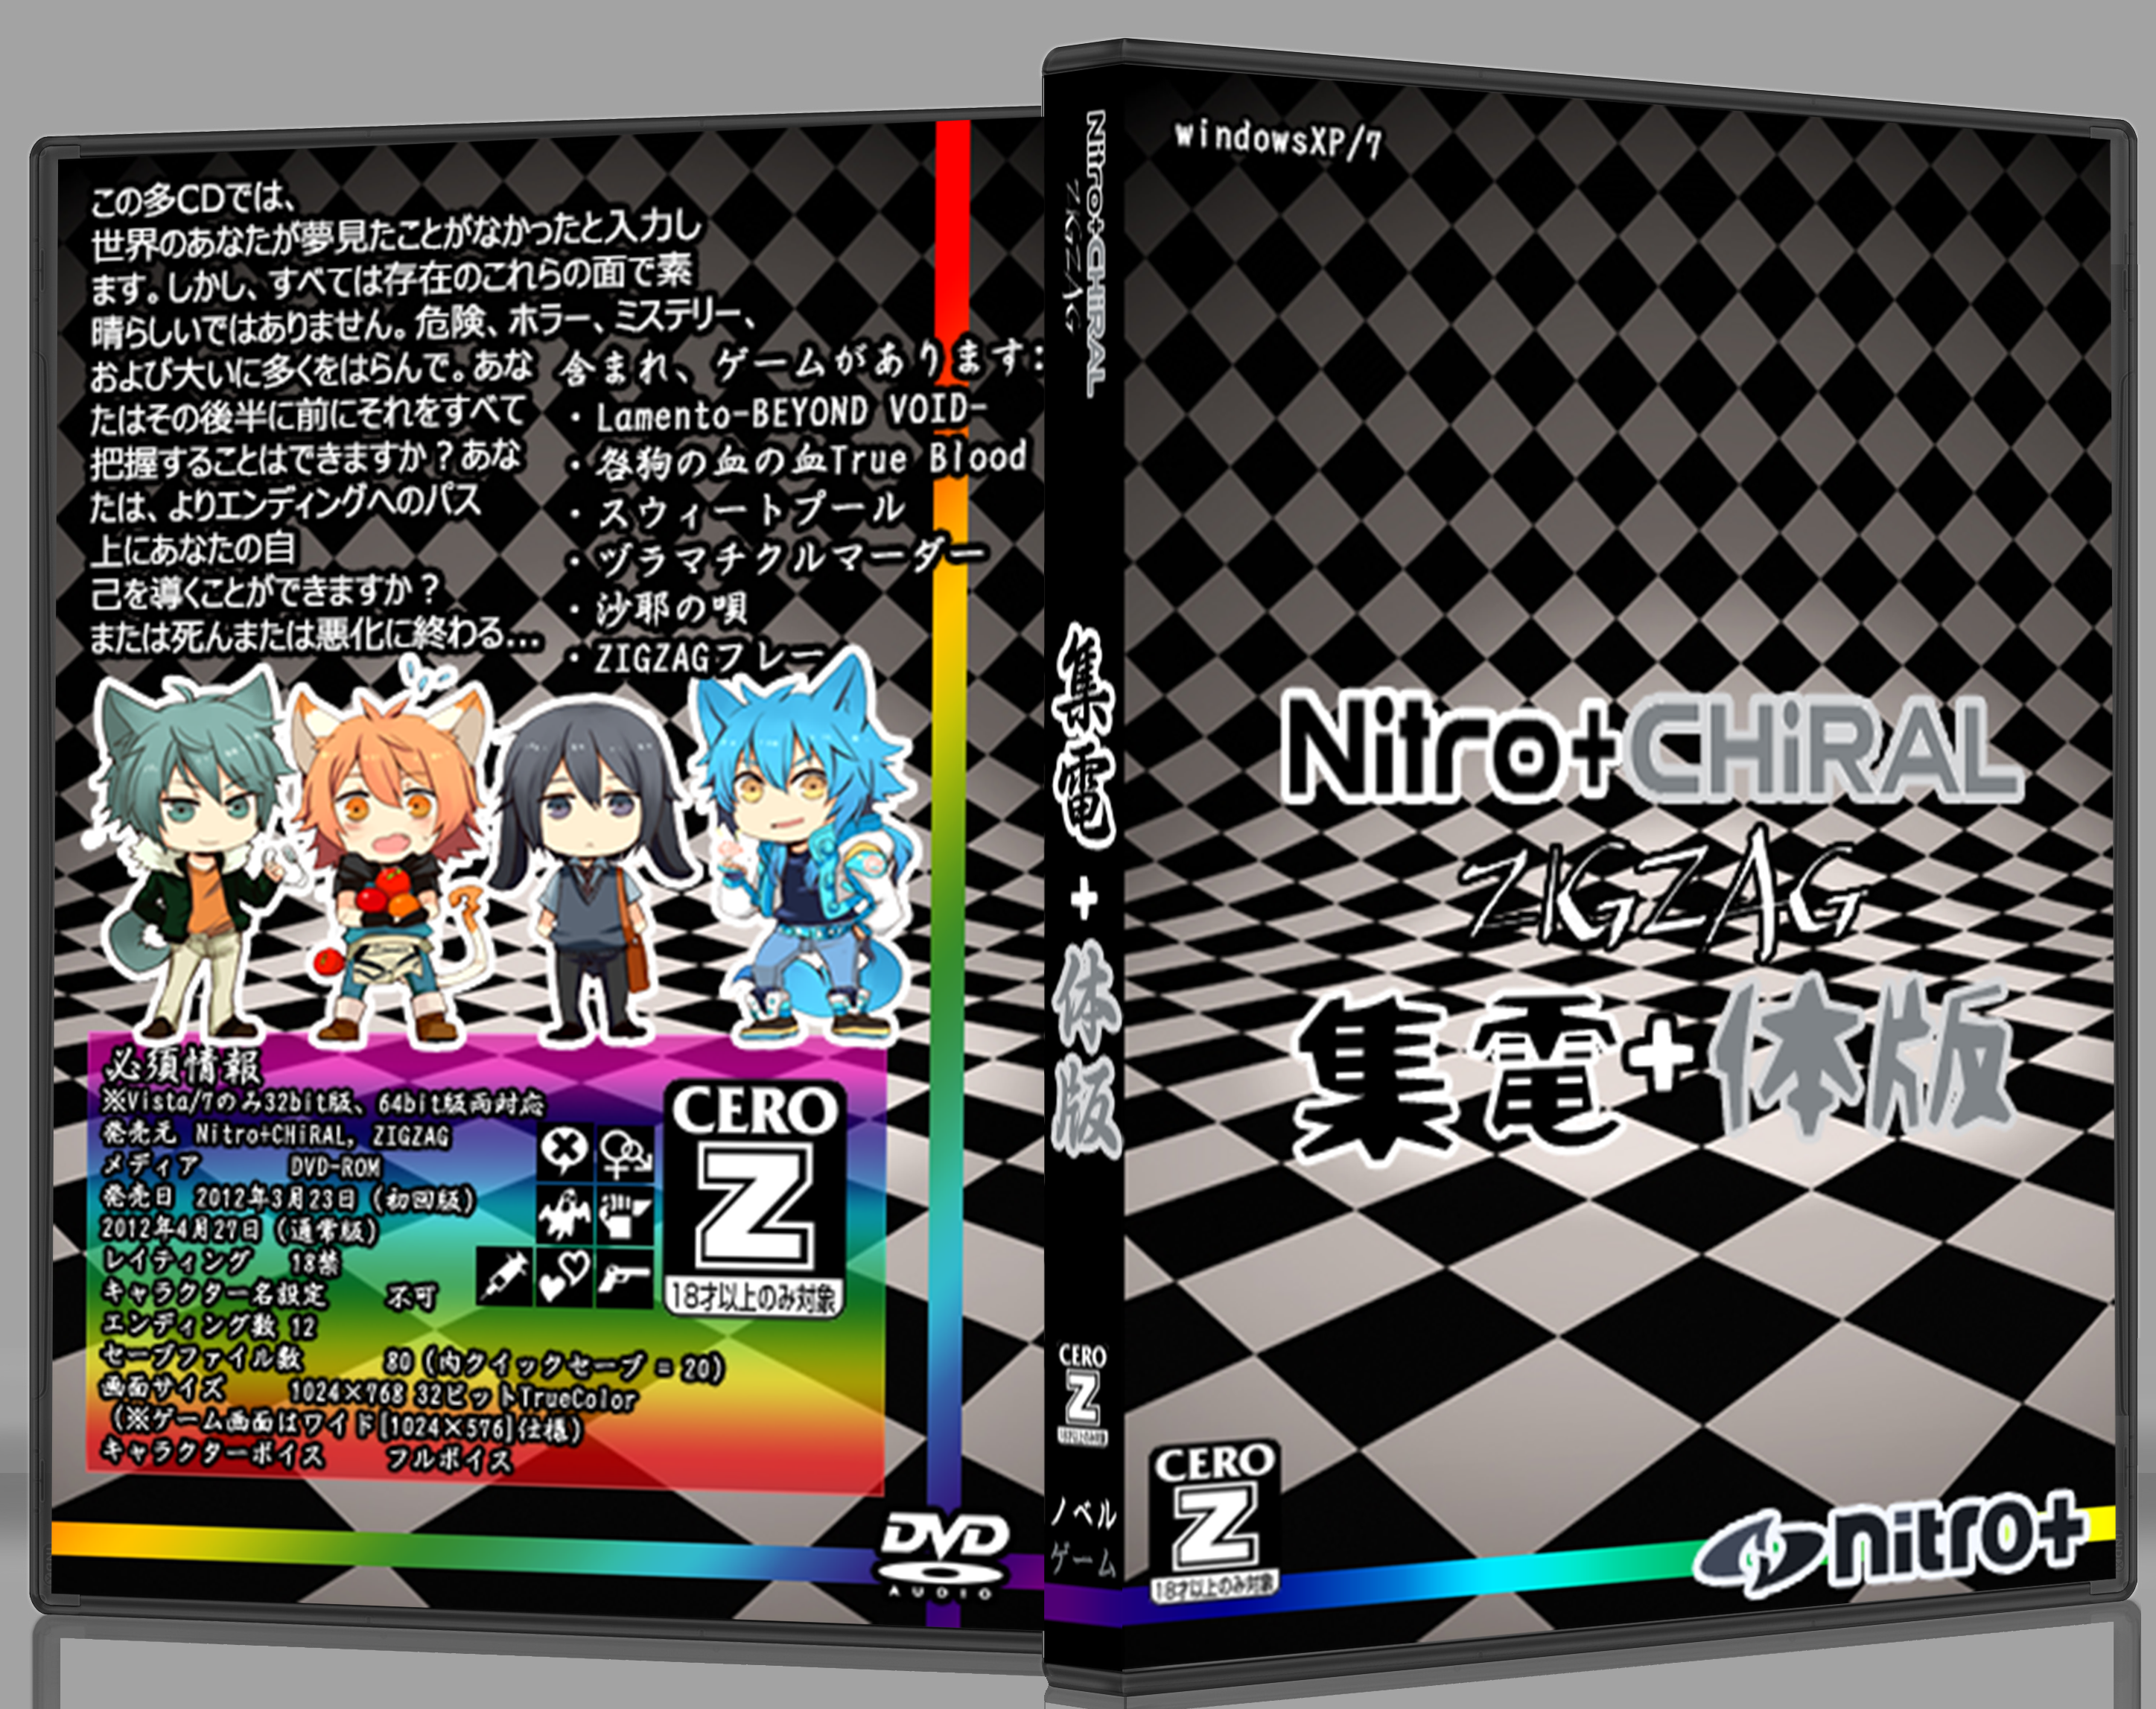 Nitro+Chiral ZIGZAG Colectors Edition box cover